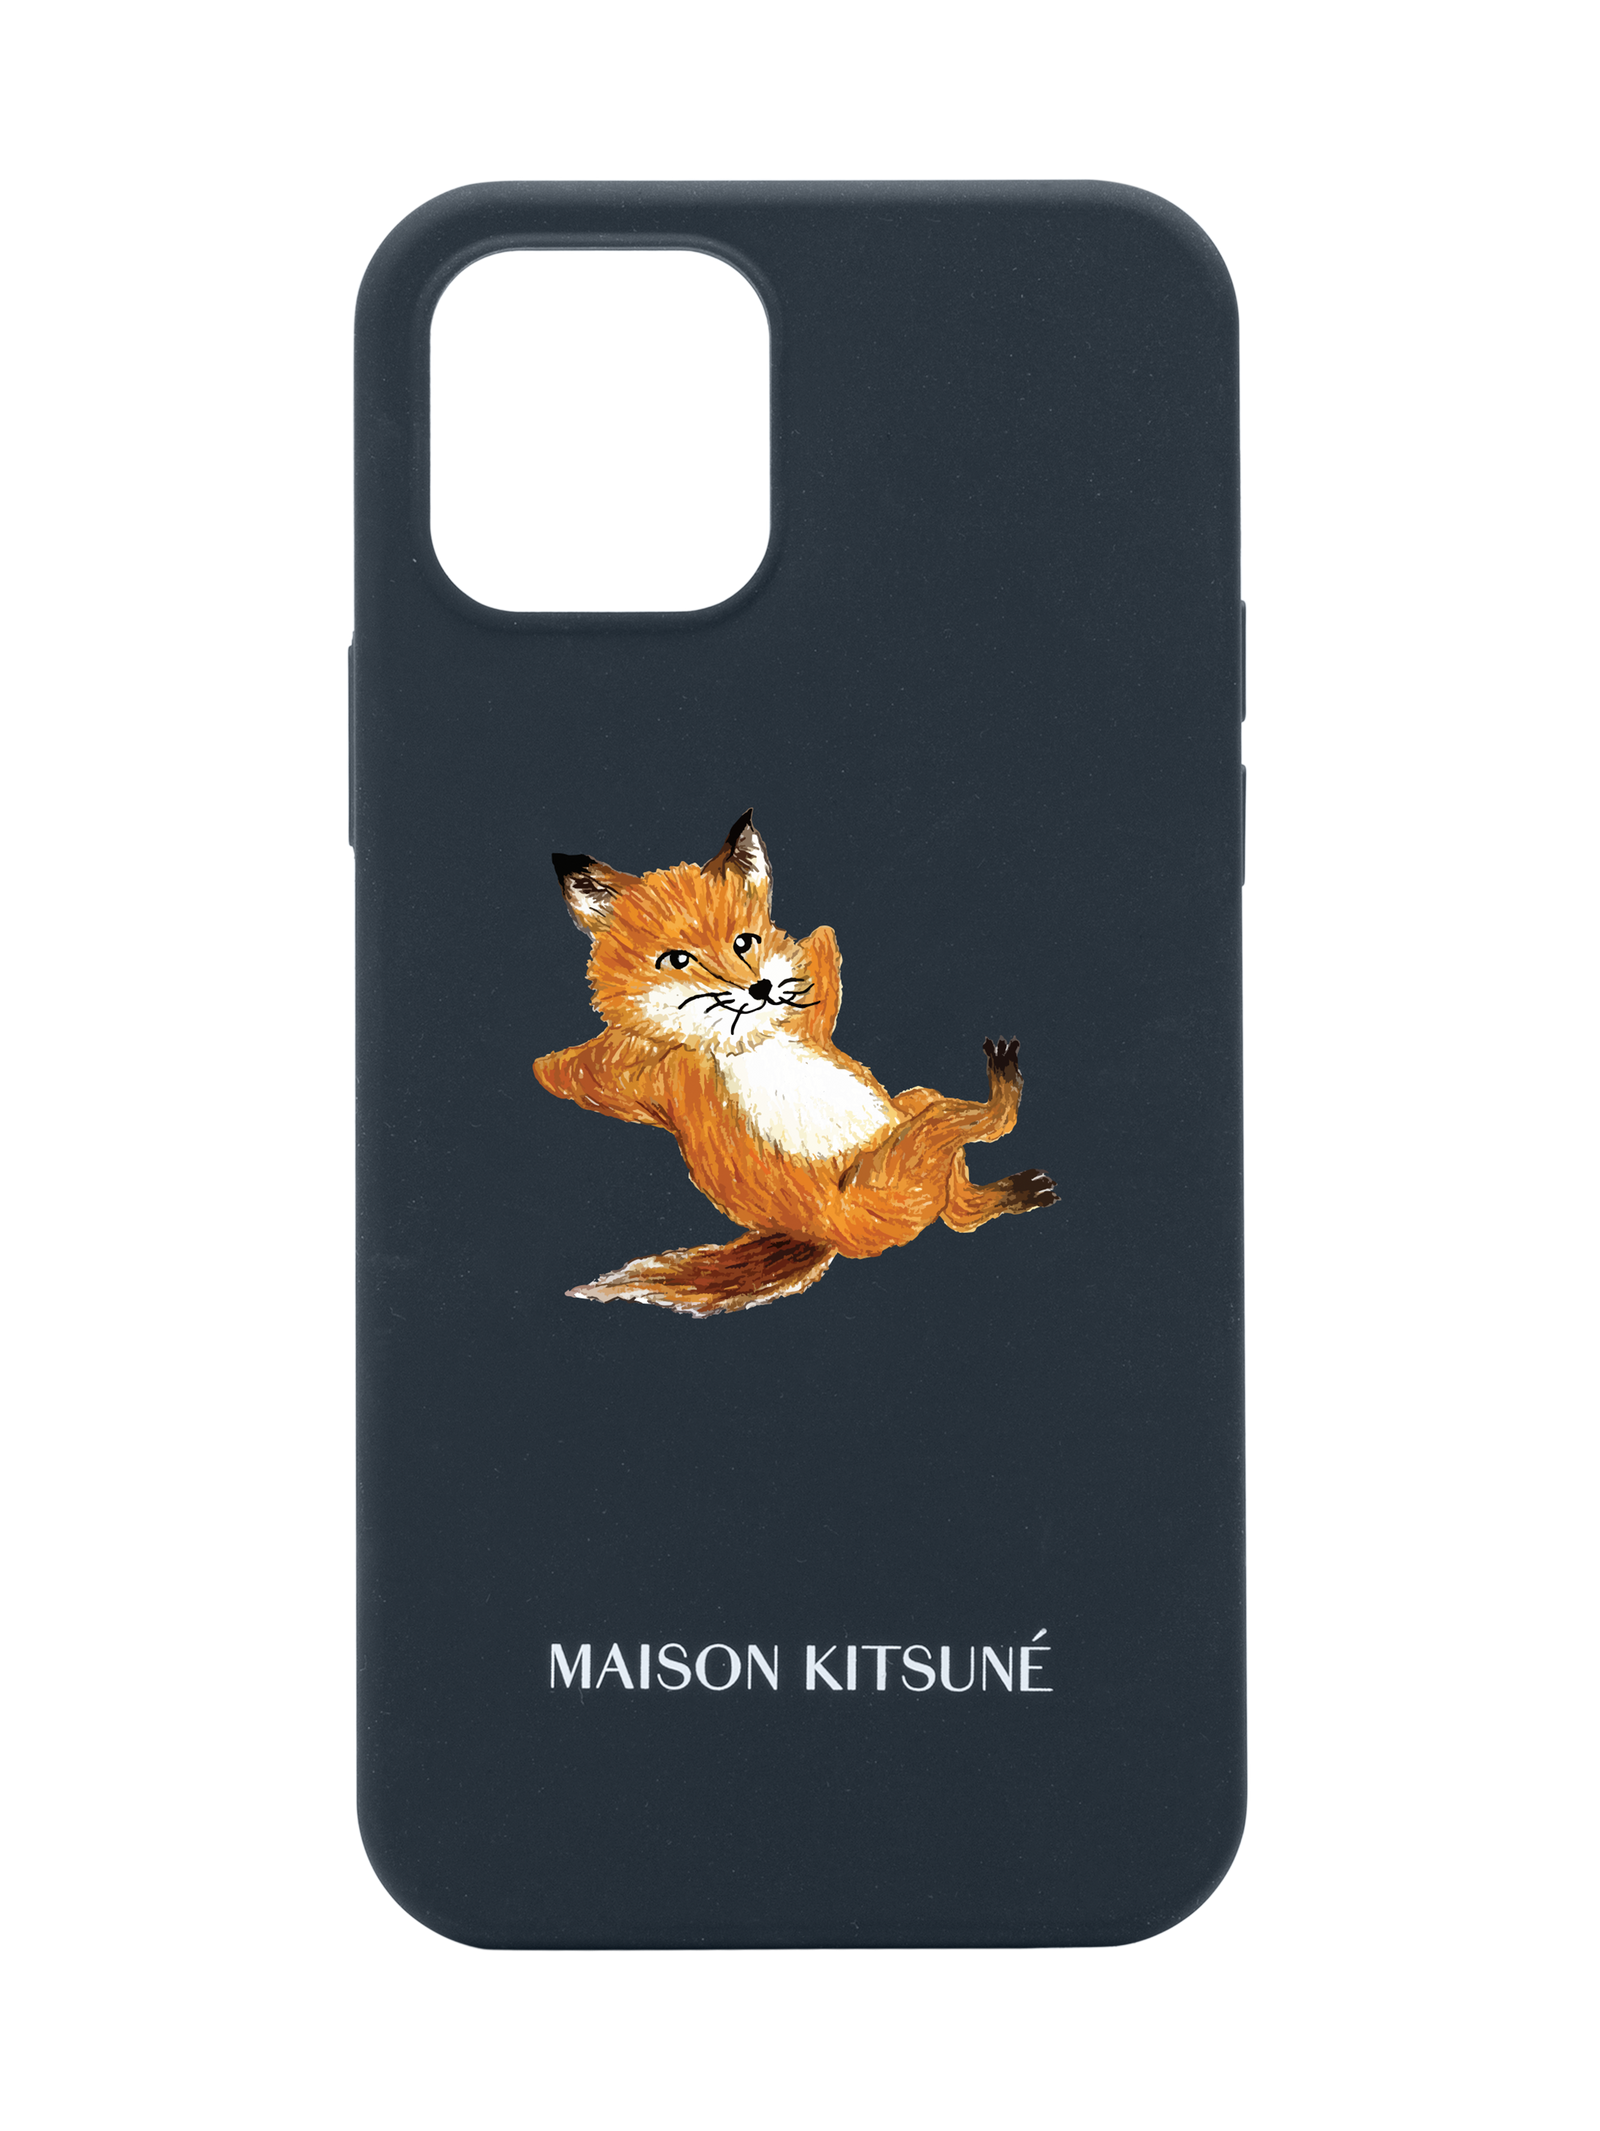 スマホアクセサリー iPhone用ケース MAISON KITSUNÉ - 【IPHONE 12/12PRO】対応ケース - CHILLAX FOX CASE - BLUE | ADDICT  WEB SHOP